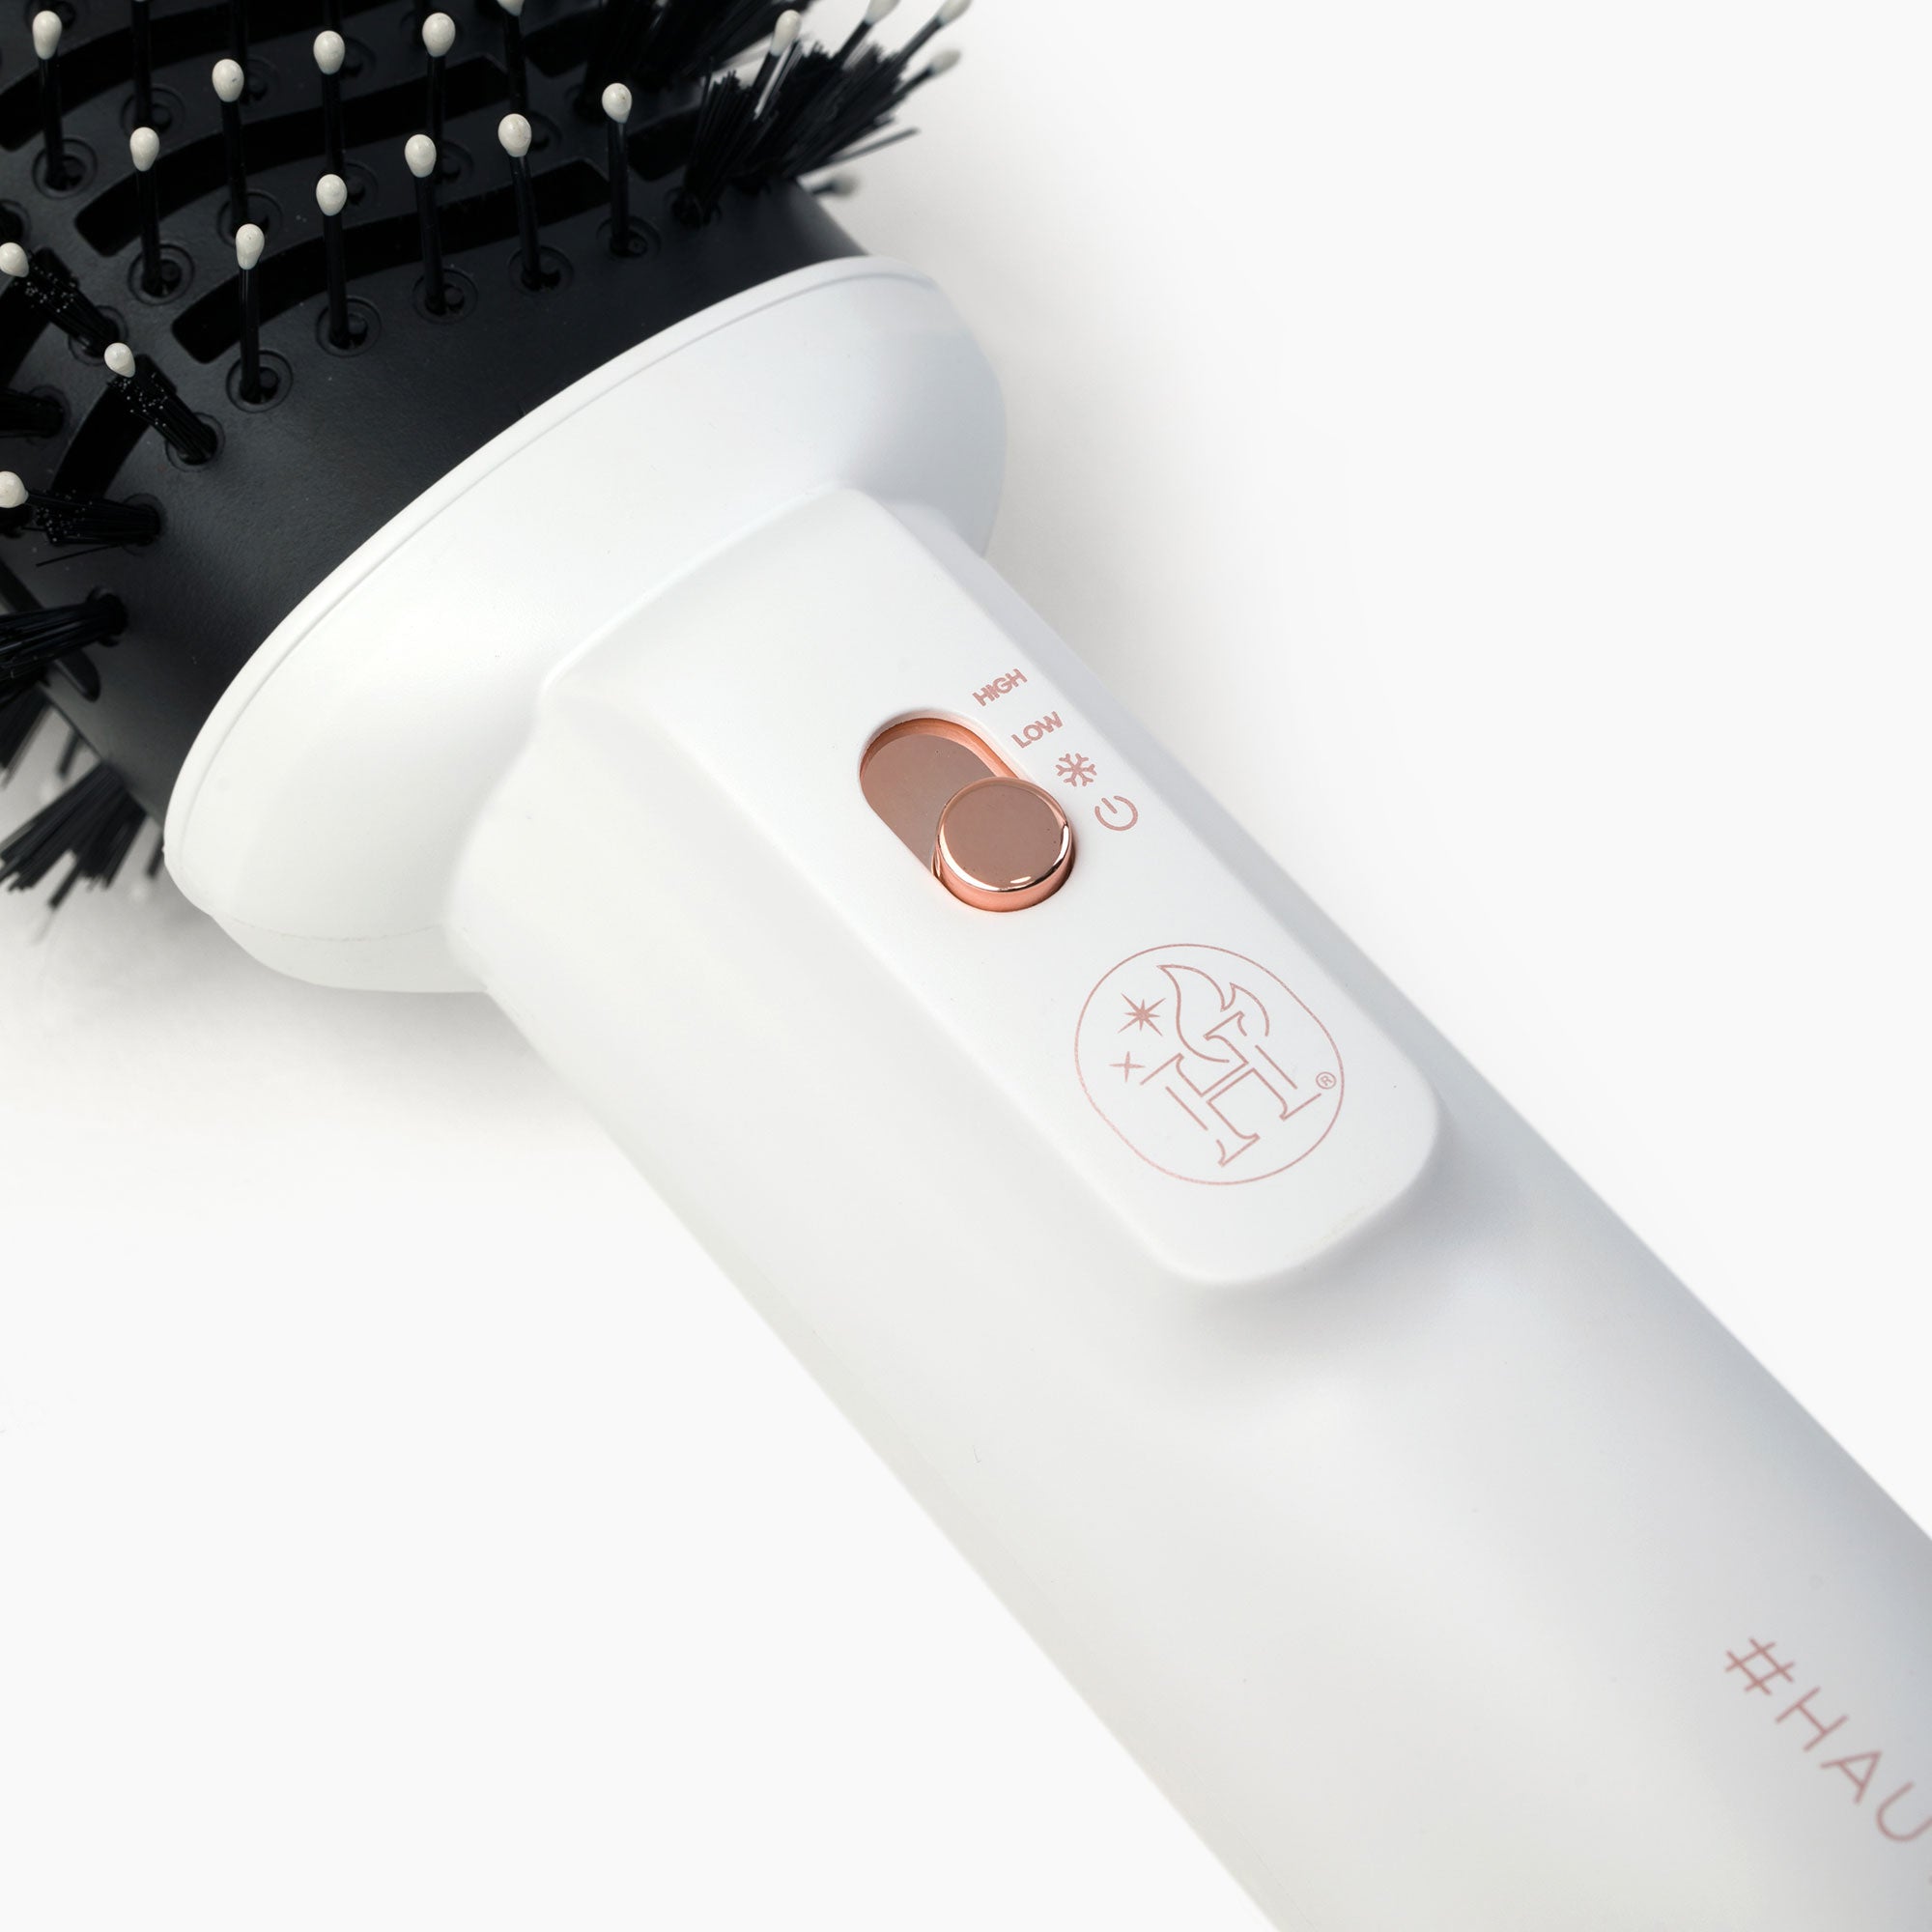 4inONE Blowout Brush Hair Dryer